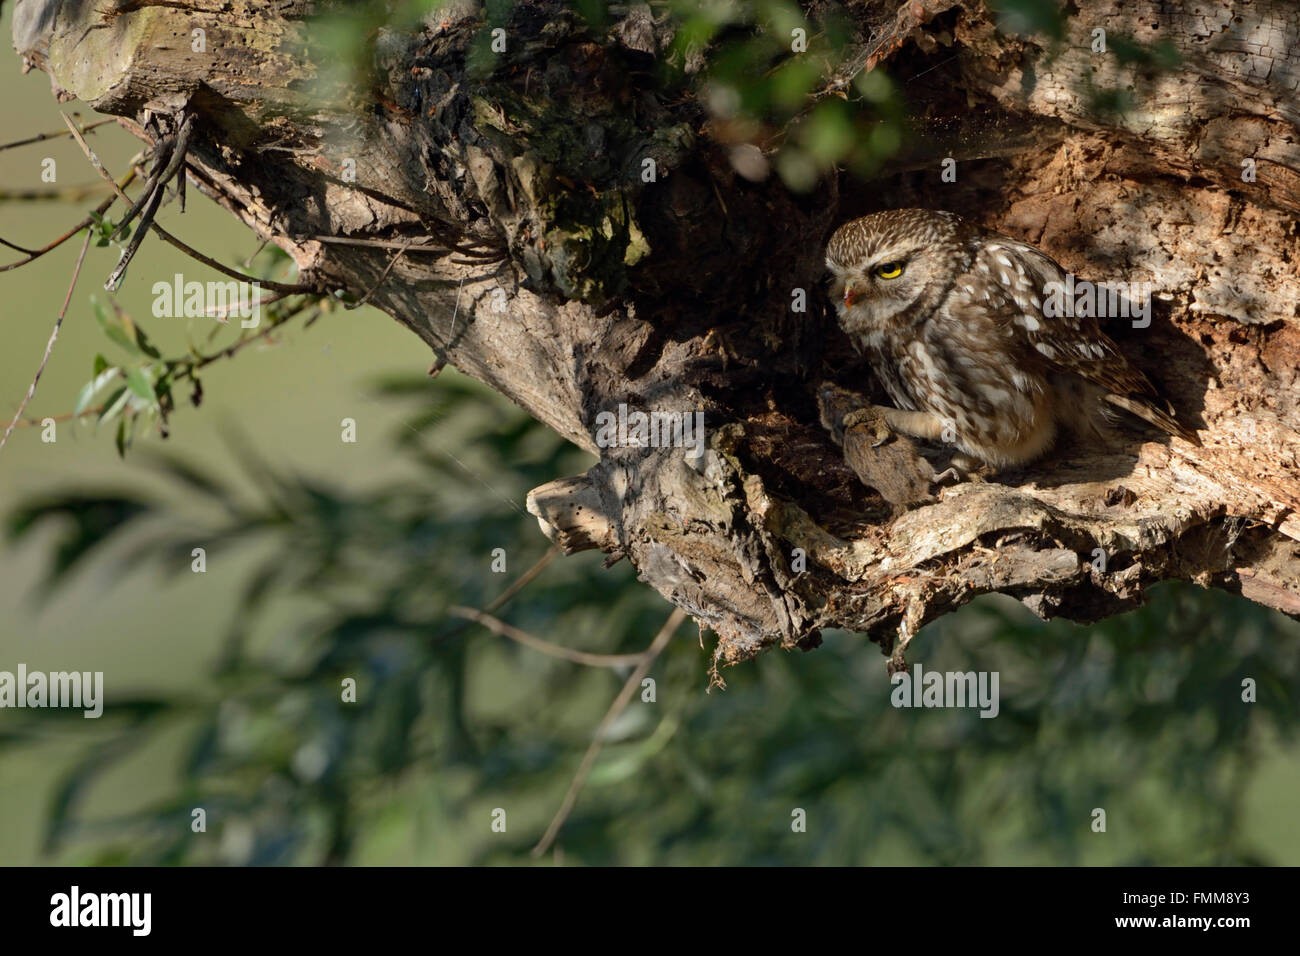 Kleine Eule / Minervas Eule (Athene Noctua), Erwachsene Raubvogel, Fütterung auf eine Maus in seinen Krallen, versteckt in einem faulen Baum. Stockfoto